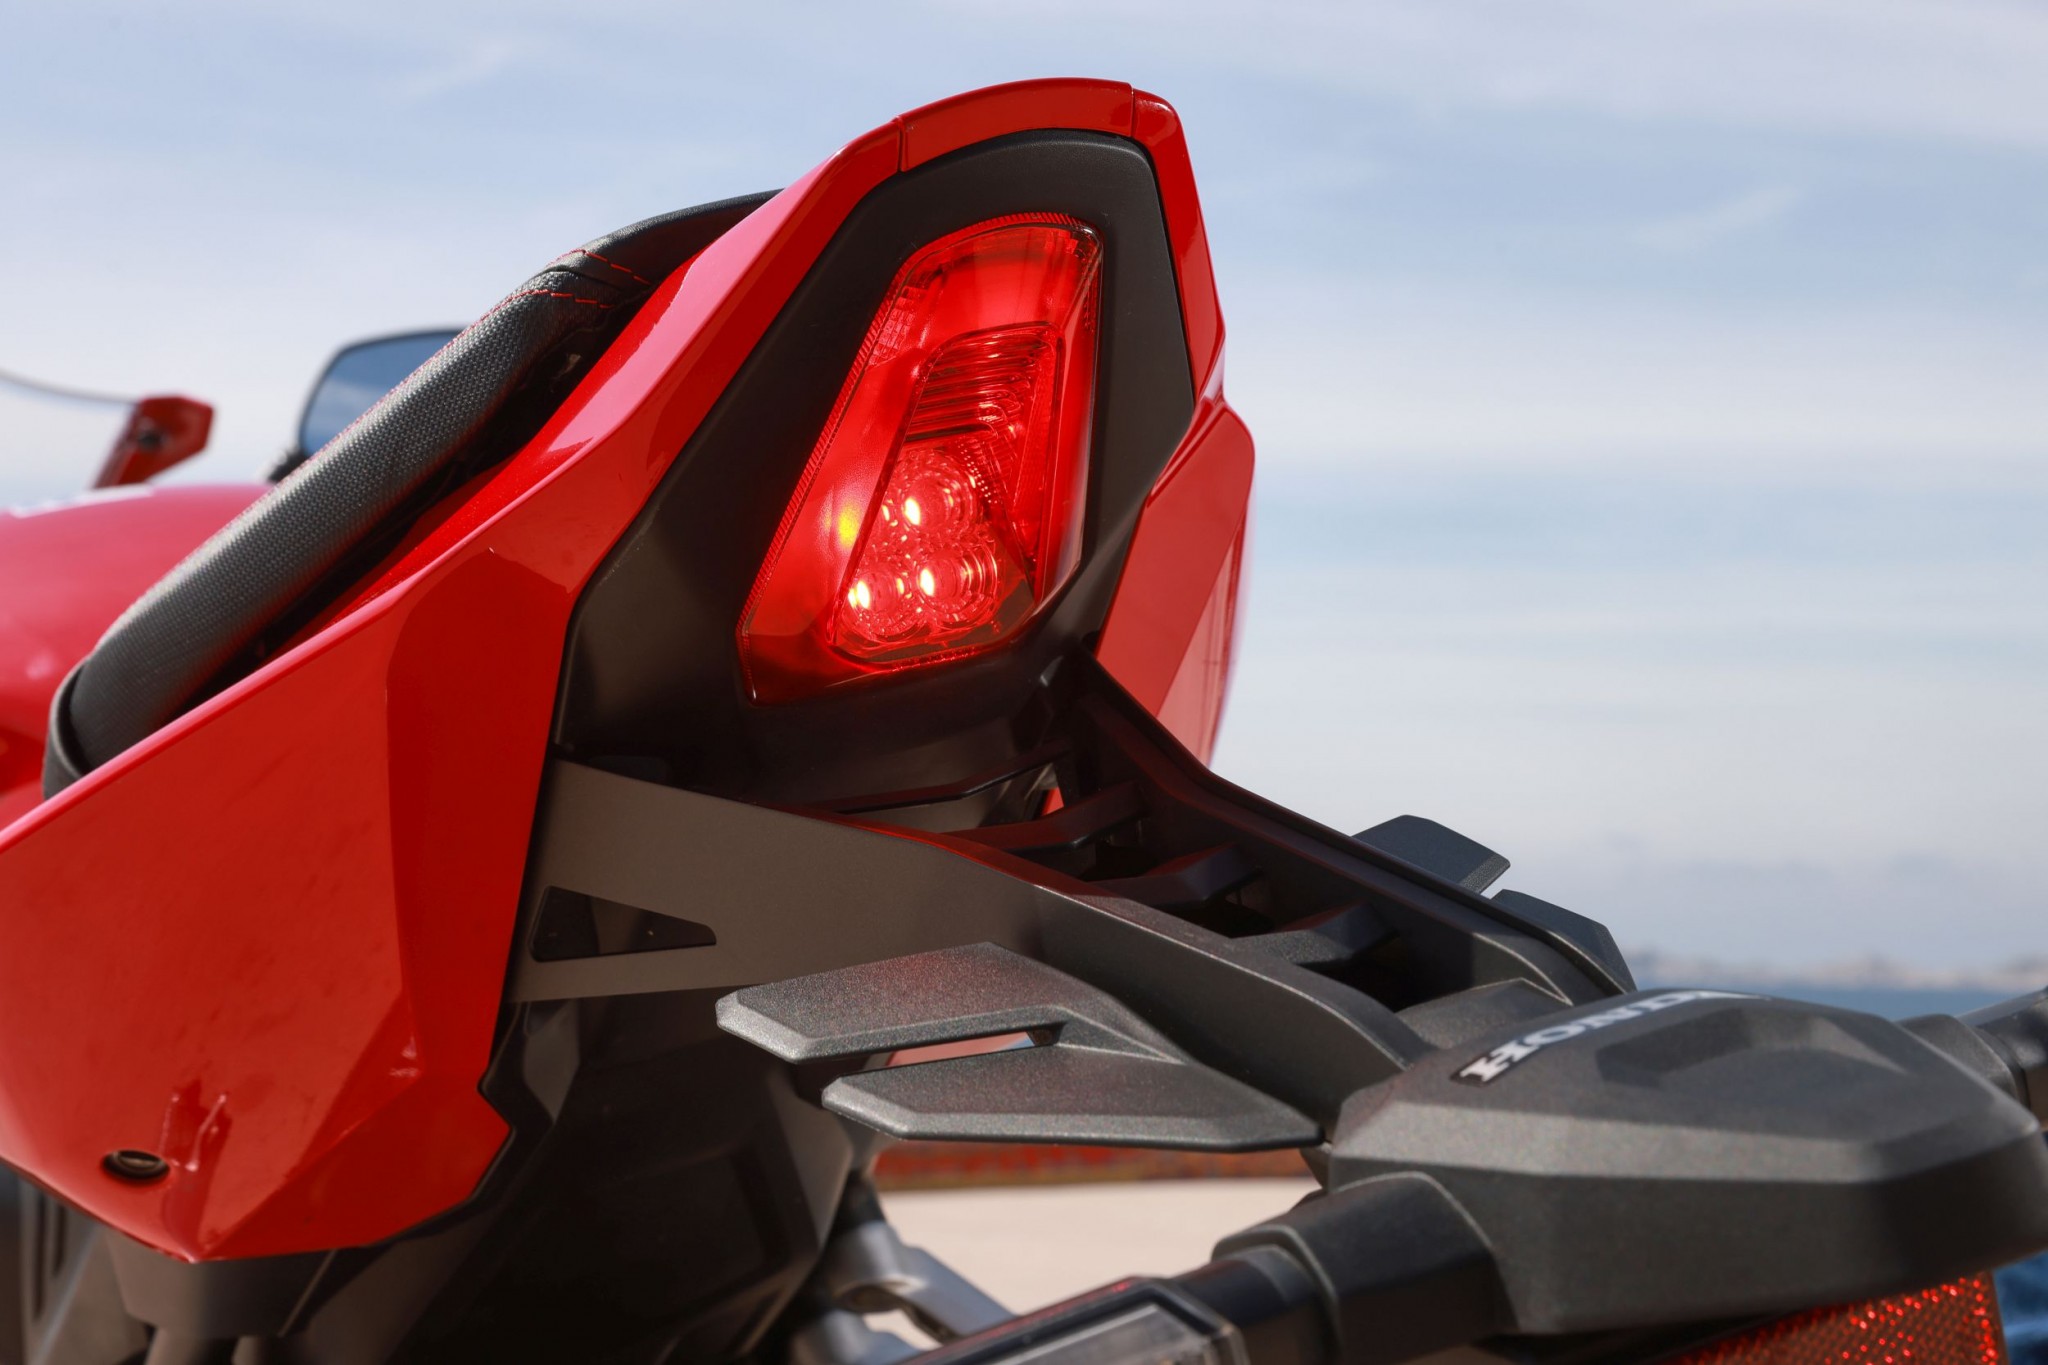 Test elektronske kvačila Honda CBR650R 2024

Honda je nedavno predstavila novu verziju svog popularnog motocikla CBR650R, koji sada dolazi sa elektronskim kvačilom, poznatim kao E-Clutch. Ova inovacija obećava da će olakšati vožnju omogućavajući vozačima da menjaju brzine bez potrebe za ručnim korišćenjem kvačila. 

Elektronsko kvačilo funkcioniše tako što automatski reguliše pritisak potreban za aktiviranje kvačila, što omogućava glatke promene brzina bez prekida u isporuci snage. Ovo je posebno korisno pri vožnji u gradu, gde česte promene brzina mogu biti naporne i otežavaju koncentraciju na saobraćaj.

Testiranje ovog sistema pokazalo je da E-Clutch ne samo da olakšava upravljanje motociklom, već i povećava sigurnost vožnje. Vozači mogu da se fokusiraju na okolinu bez brige o mehaničkim aspektima vožnje, što je posebno važno za manje iskusne vozače.

Honda CBR650R sa elektronskim kvačilom biće dostupna na tržištu od 2024. godine i očekuje se da će privući veliki broj kupaca, kako iskusnih tako i onih koji tek ulaze u svet motociklizma. Ovaj model predstavlja značajan korak napred u tehnologiji motocikala i potencijalno postavlja nove standarde u industriji. - Слика 8